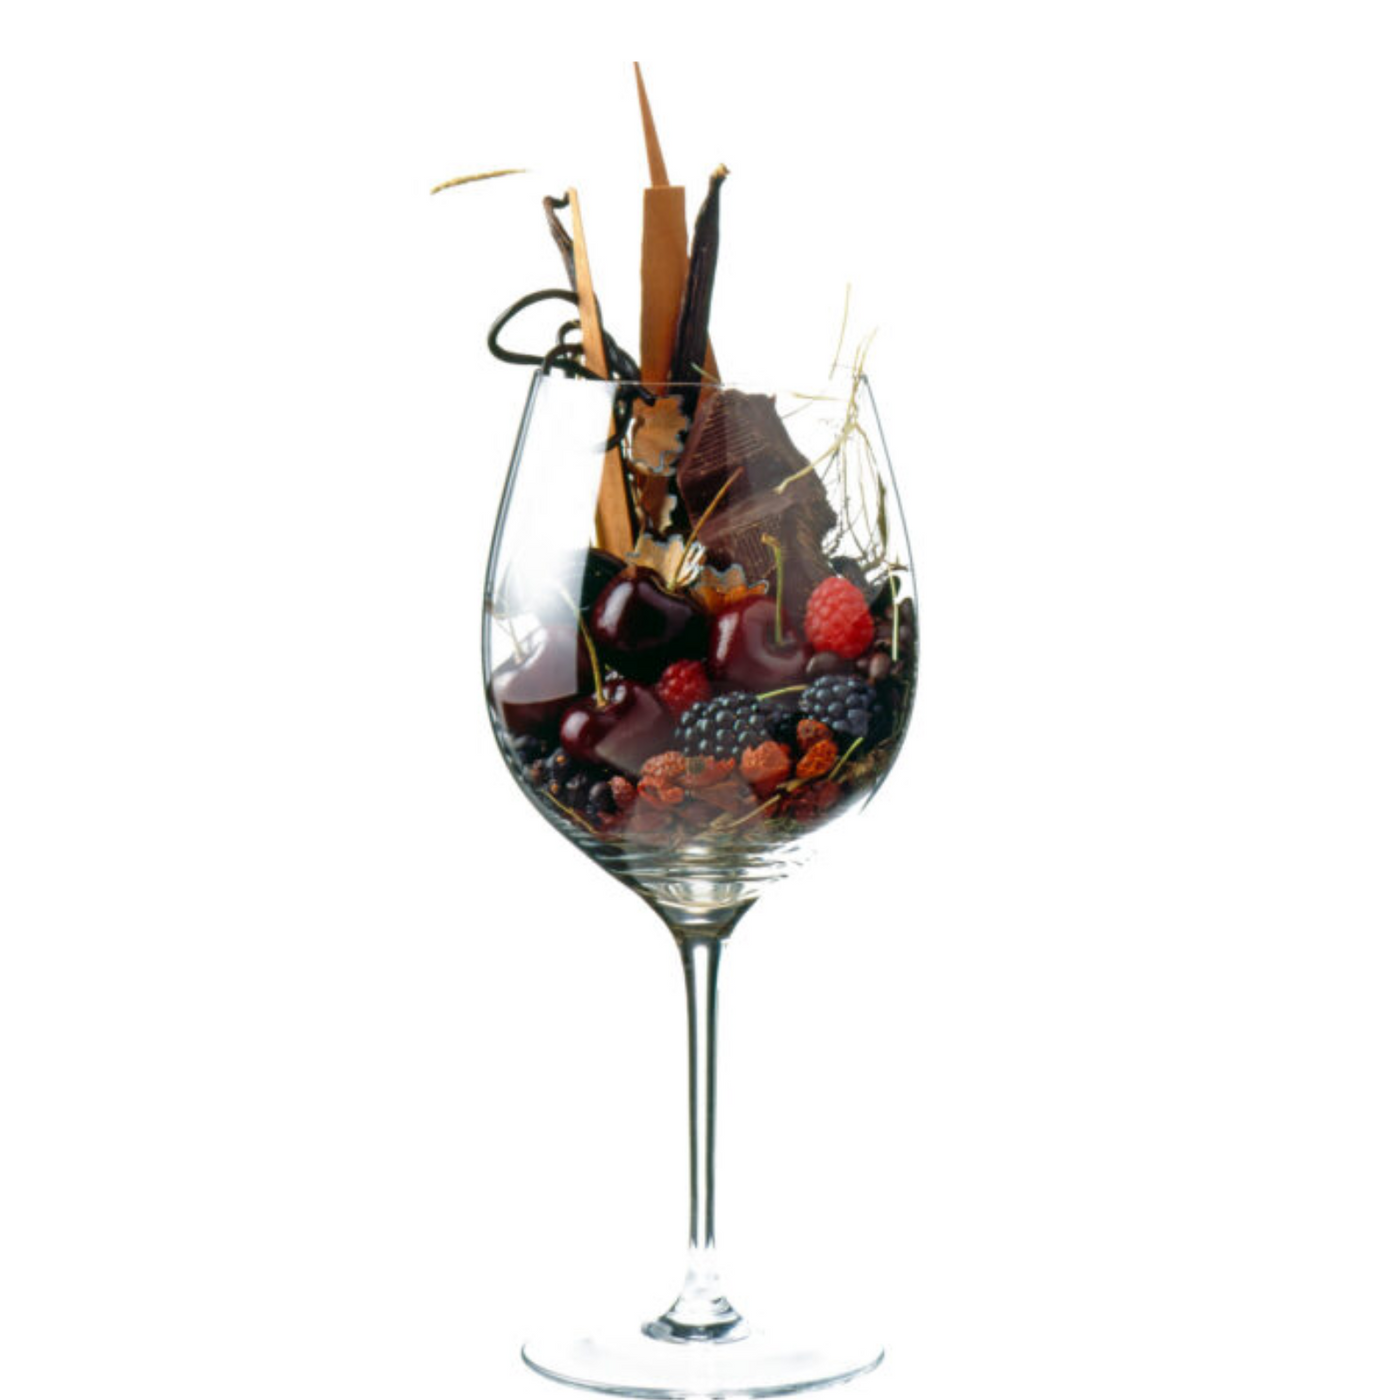 Sangiovese wijnen, de basis van bekende Italiaanse wijnen als Chianti en Brunello. Je vind zie hier bij Flesjewijn.com